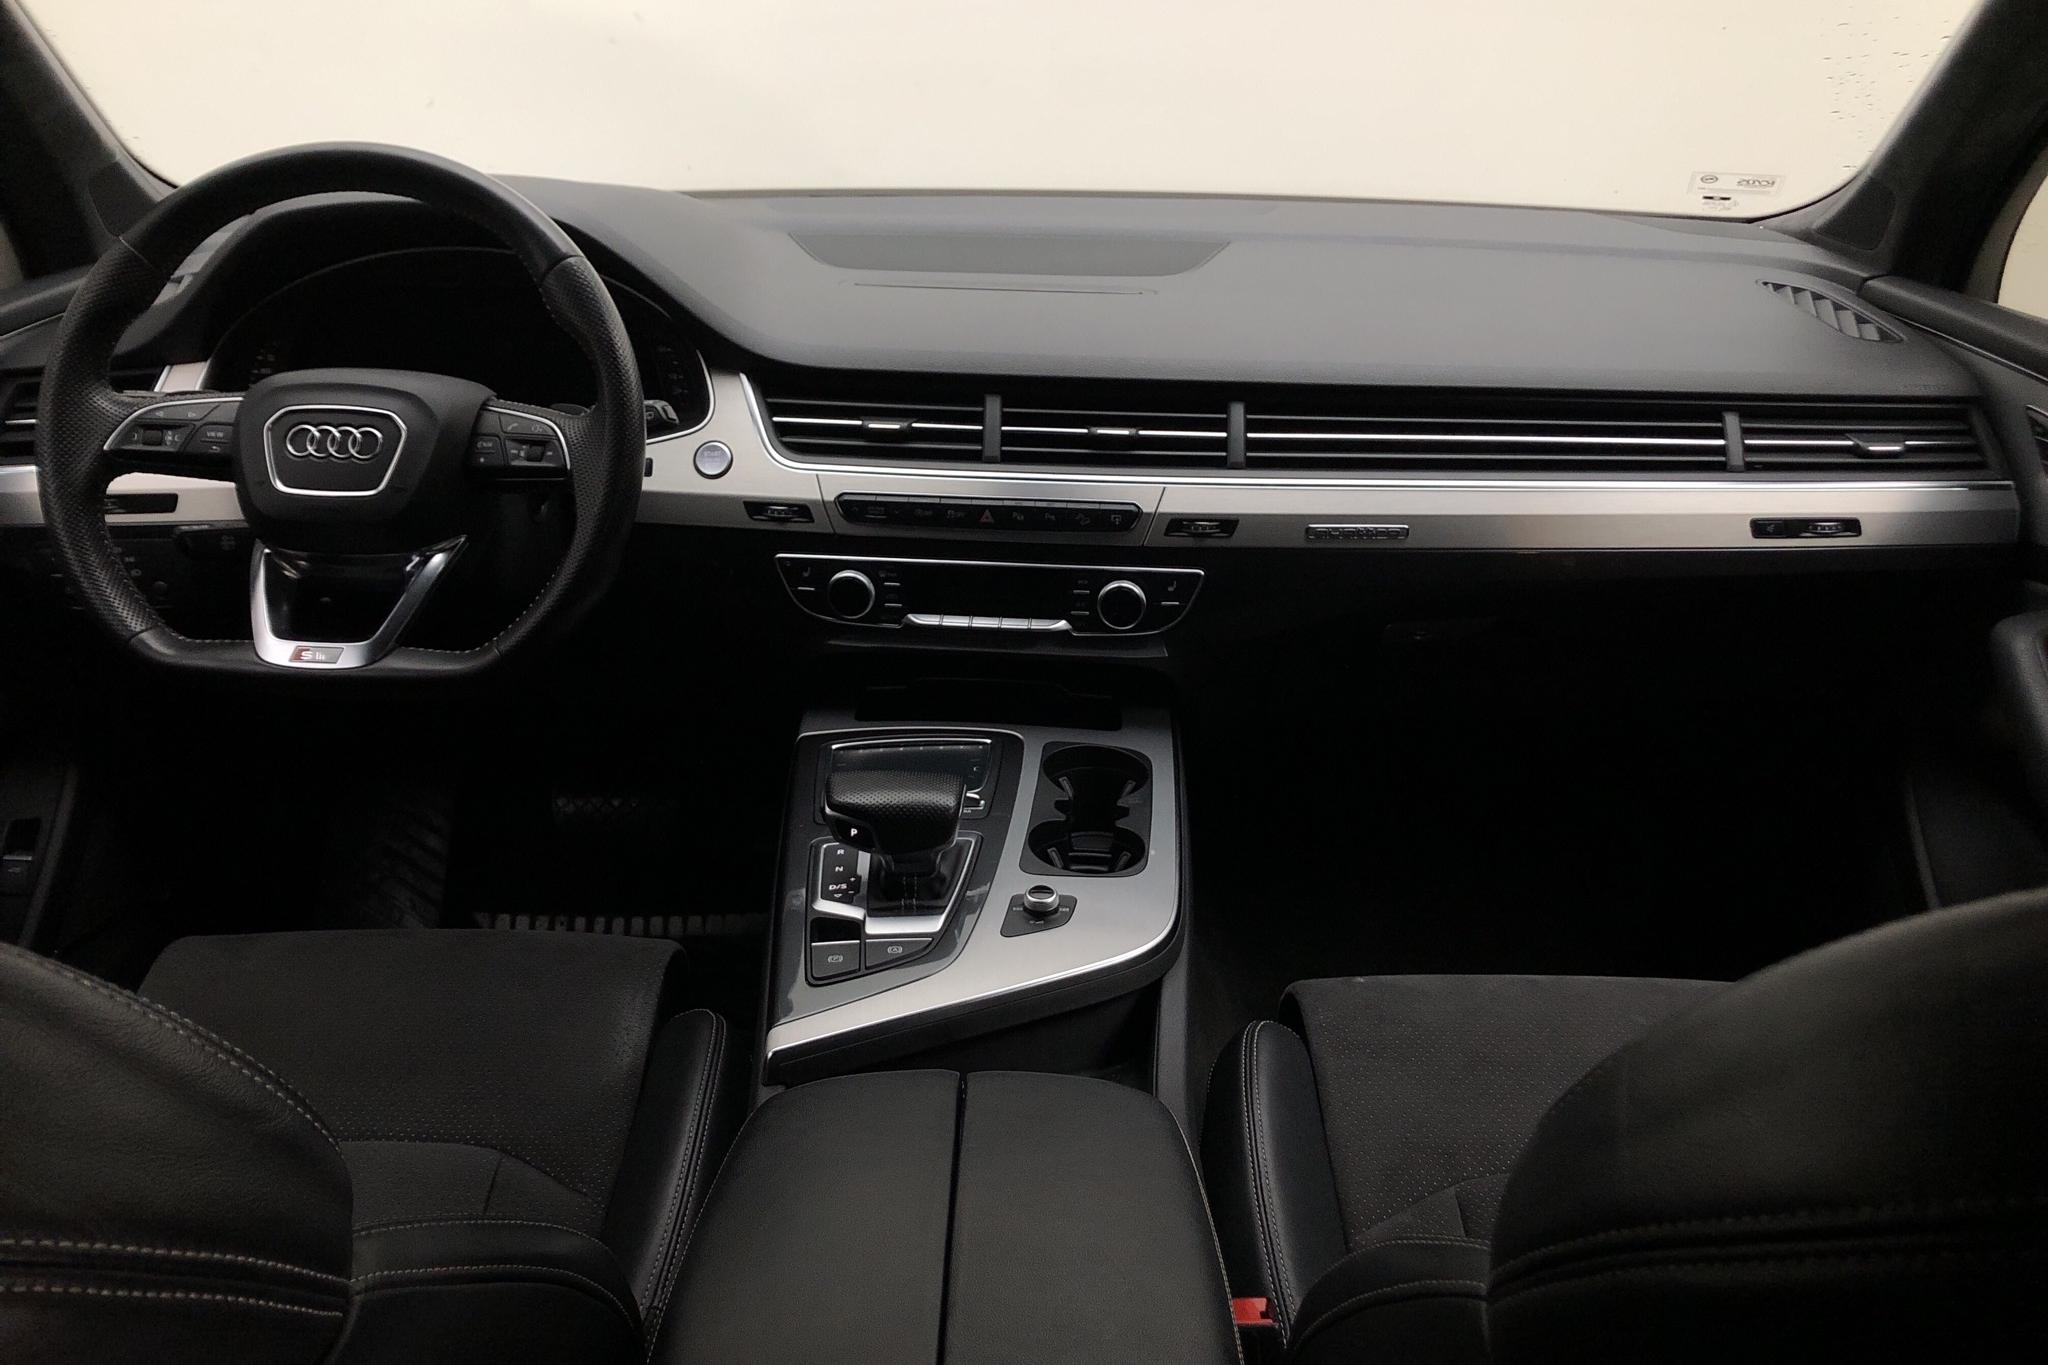 Audi Q7 3.0 TDI quattro (272hk) - 157 280 km - Automatic - gray - 2016